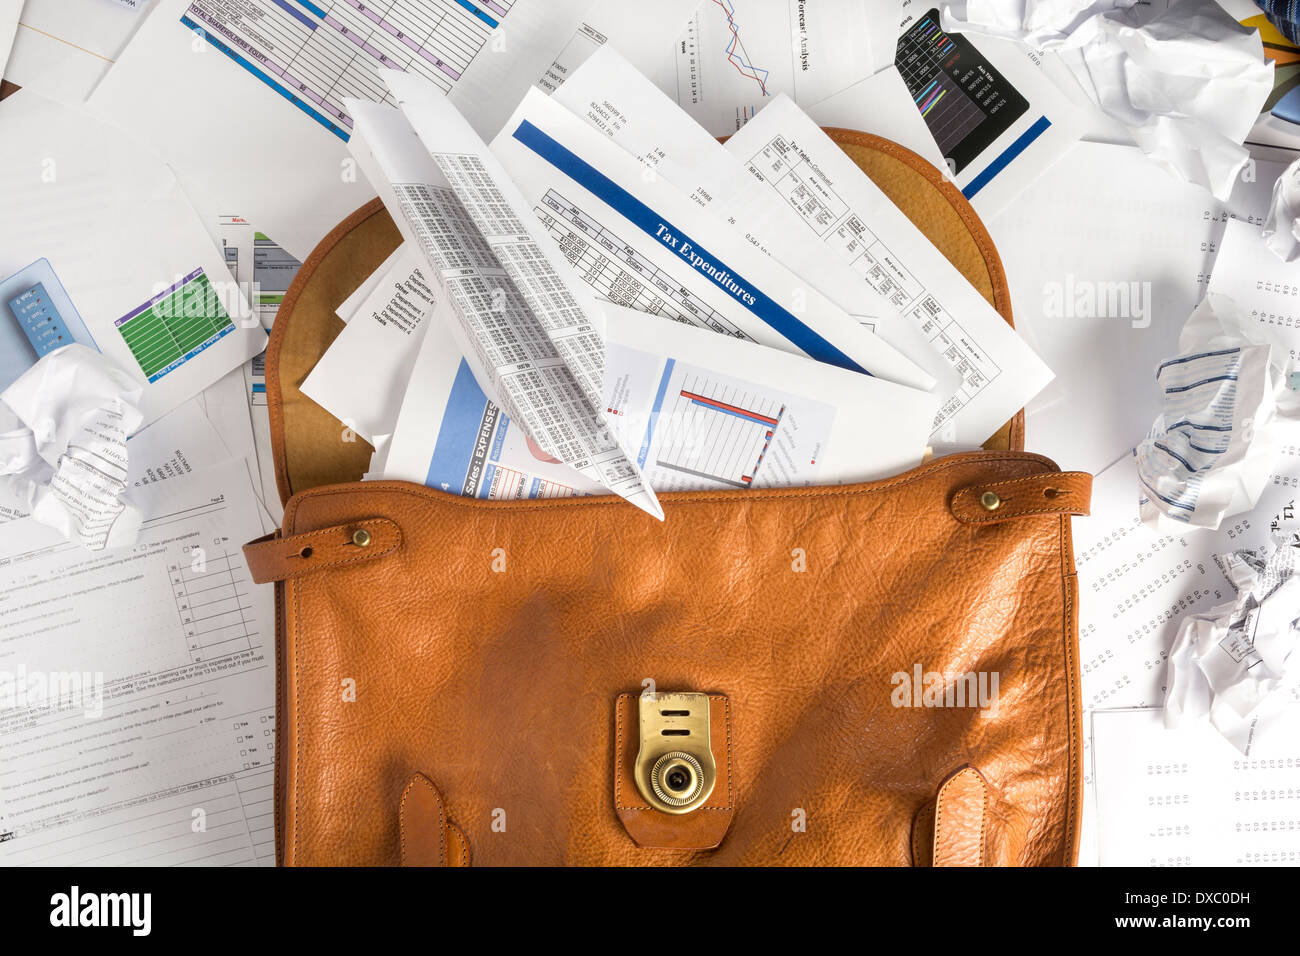 Concepto foto mostrando el maletín abierto y rebosante de papeleo que puede ser usado con fiscales o historias Foto de stock